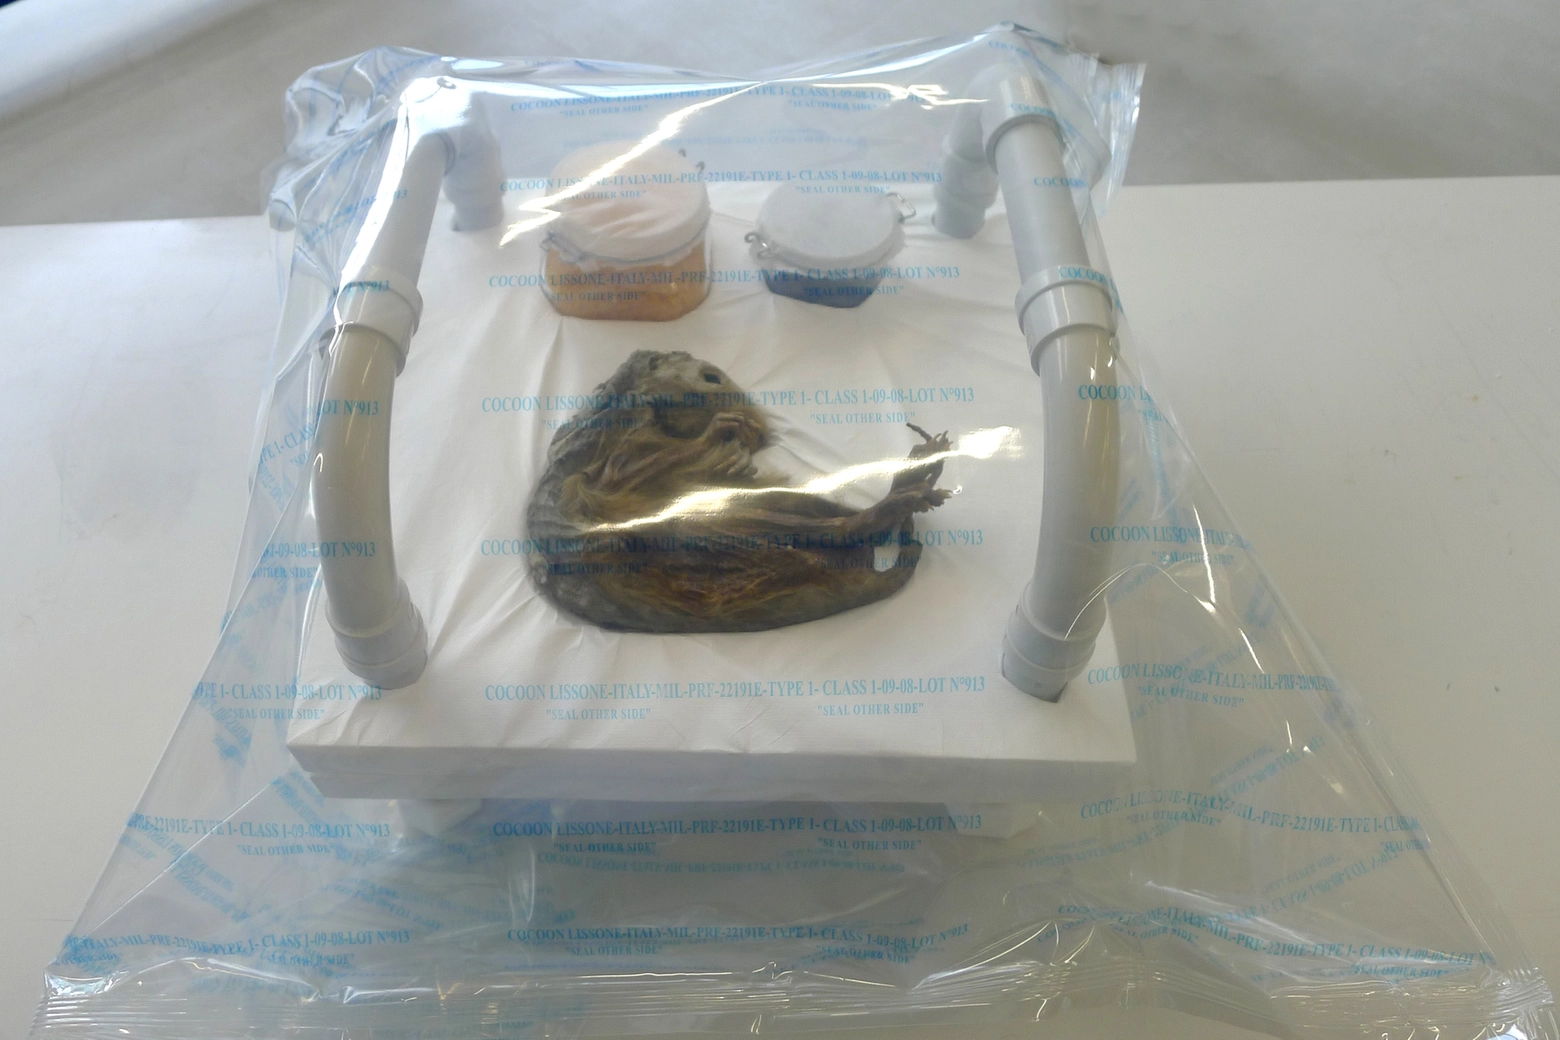 La conservazione della piccola mummia durante le ricerche, prima dell'esposizione nella teca sotto vuoto al Museo